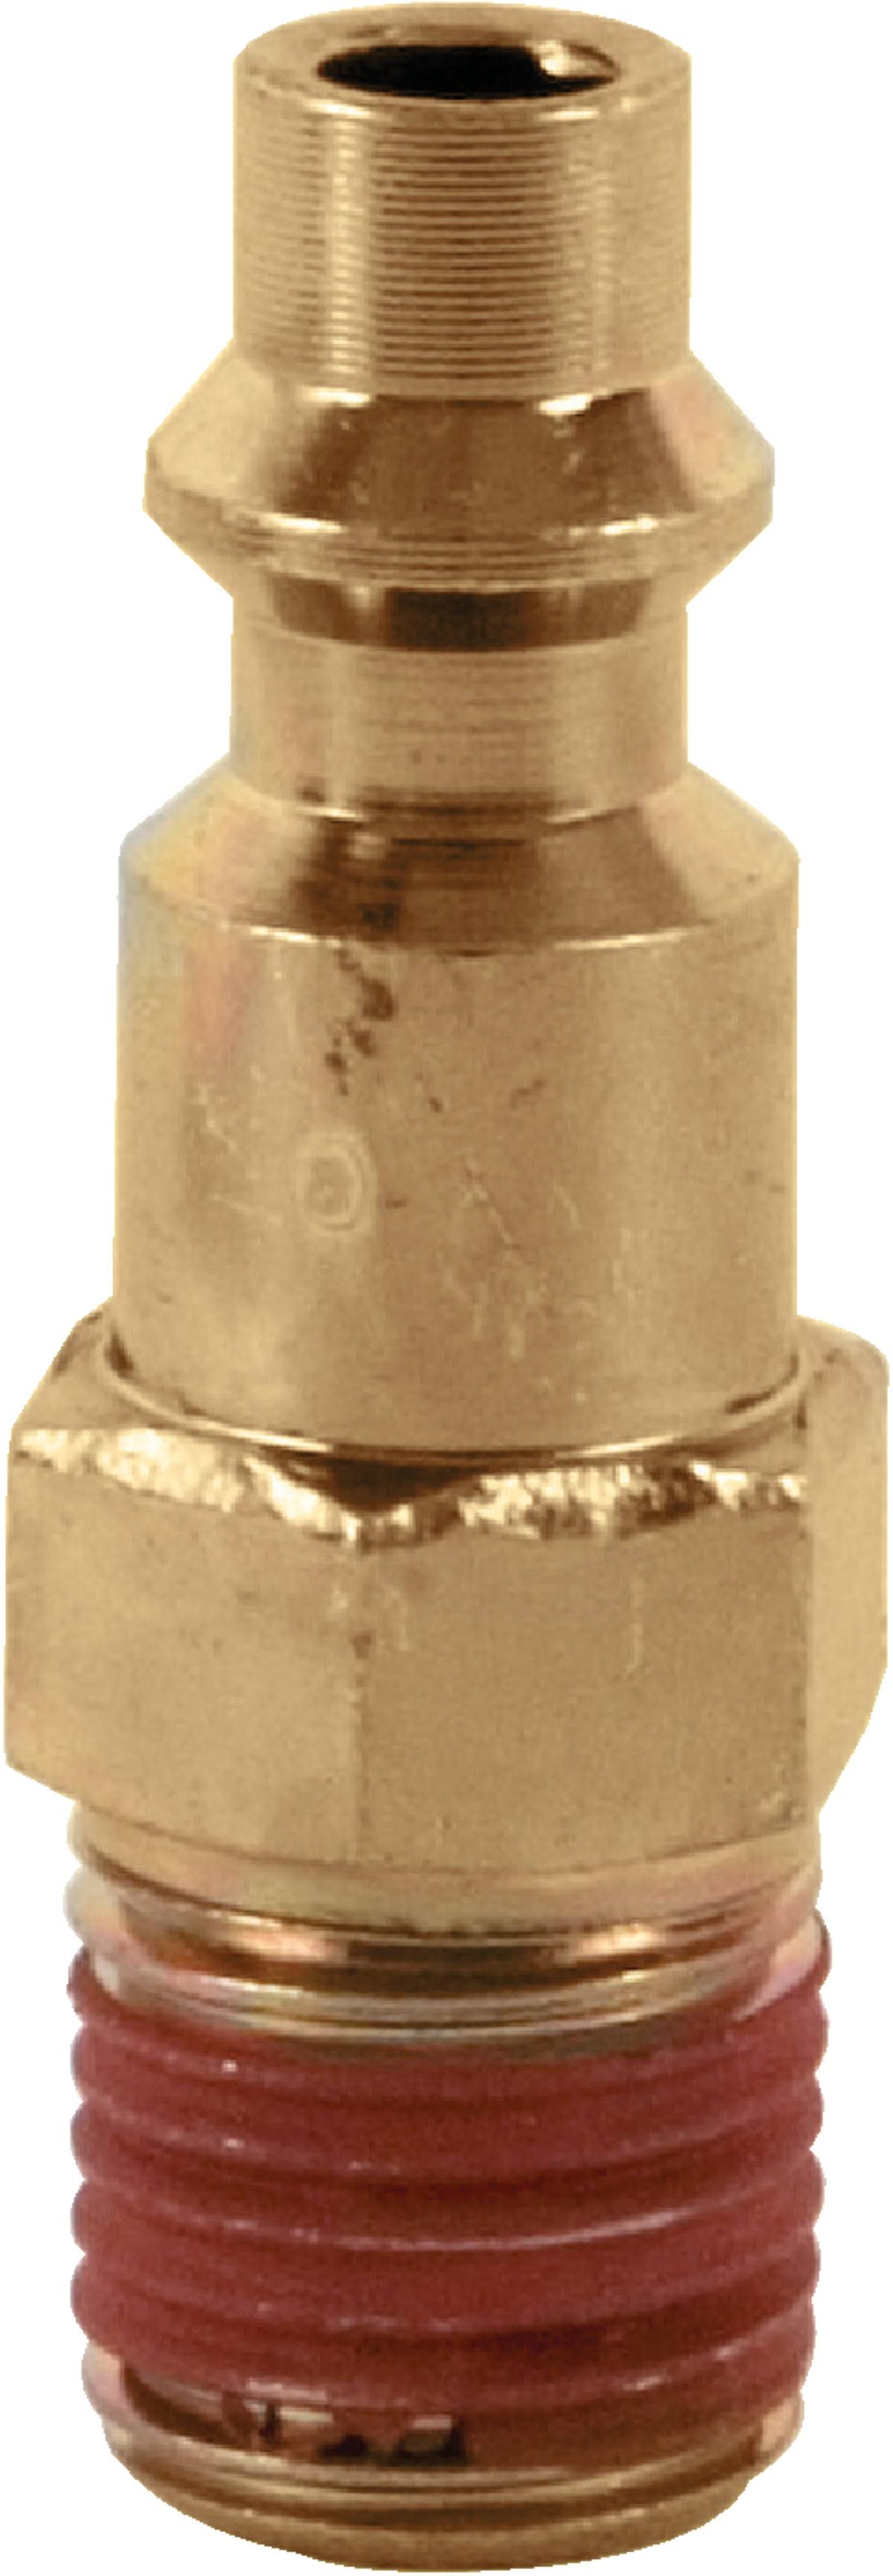 Bostitch BTFP72318 Industrial Air Tool Plug - 1/4"